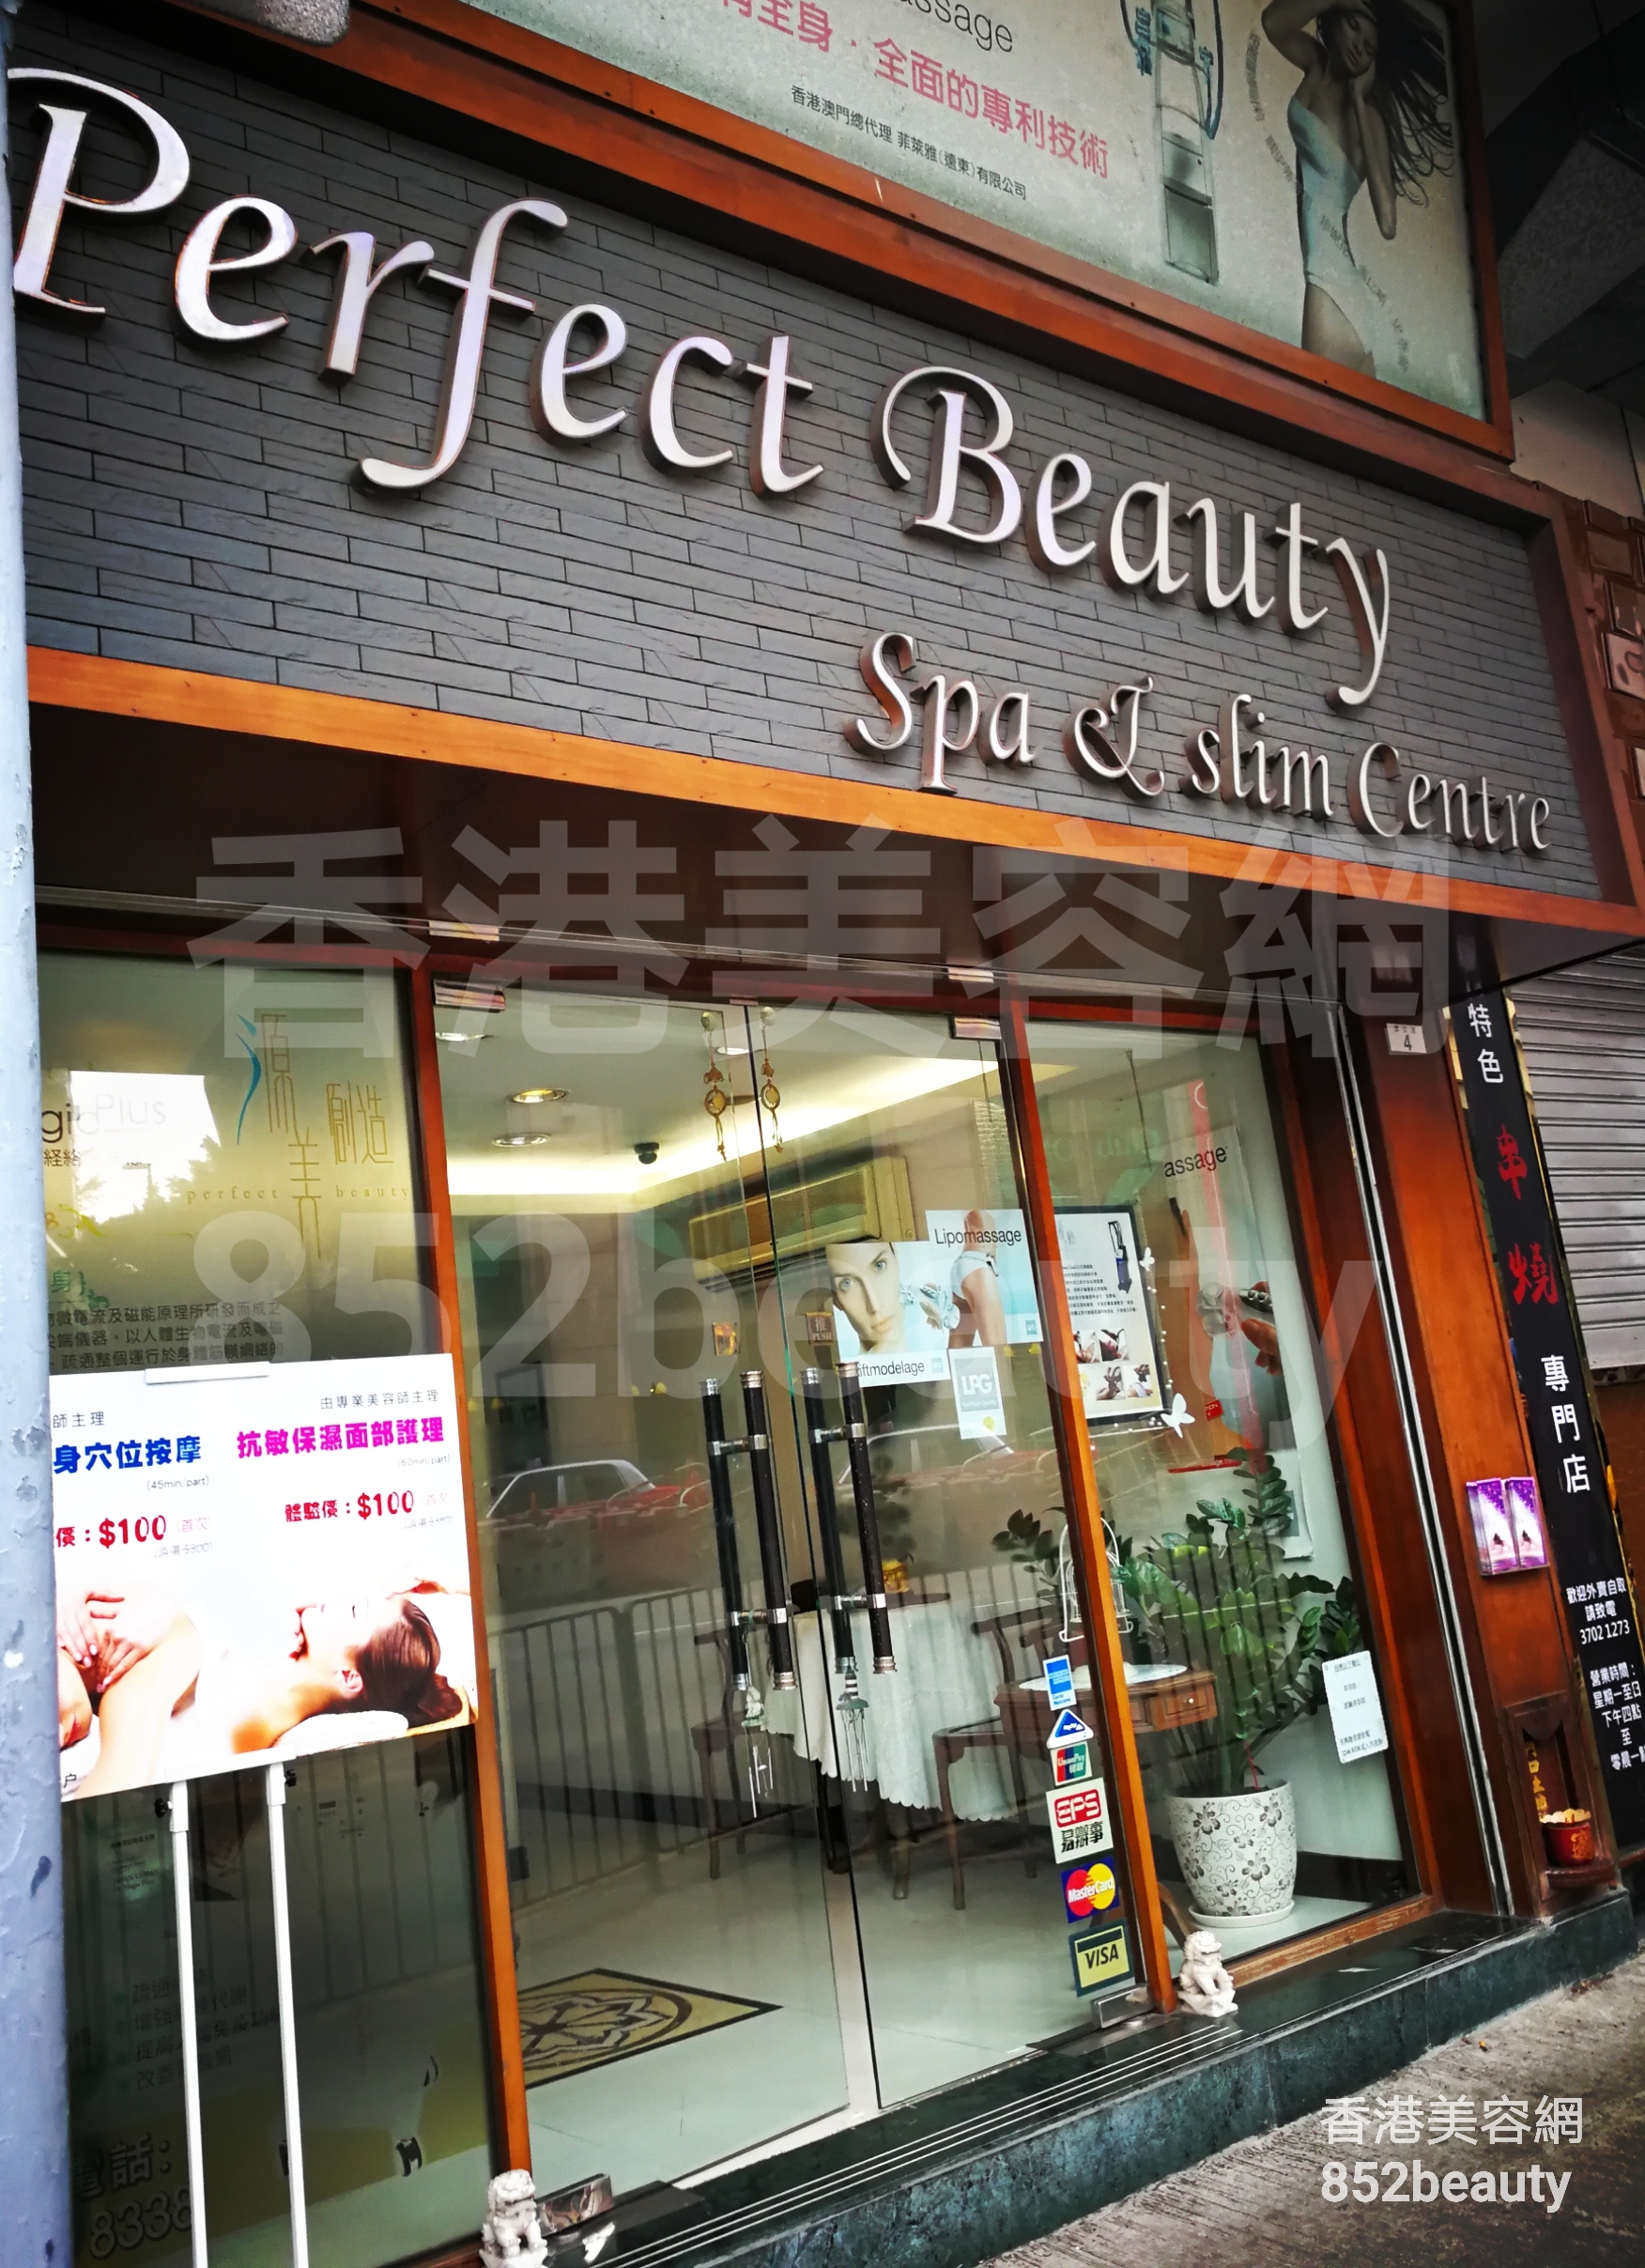 香港美容網 Hong Kong Beauty Salon 美容院 / 美容師: Perfect beauty (土瓜灣店)